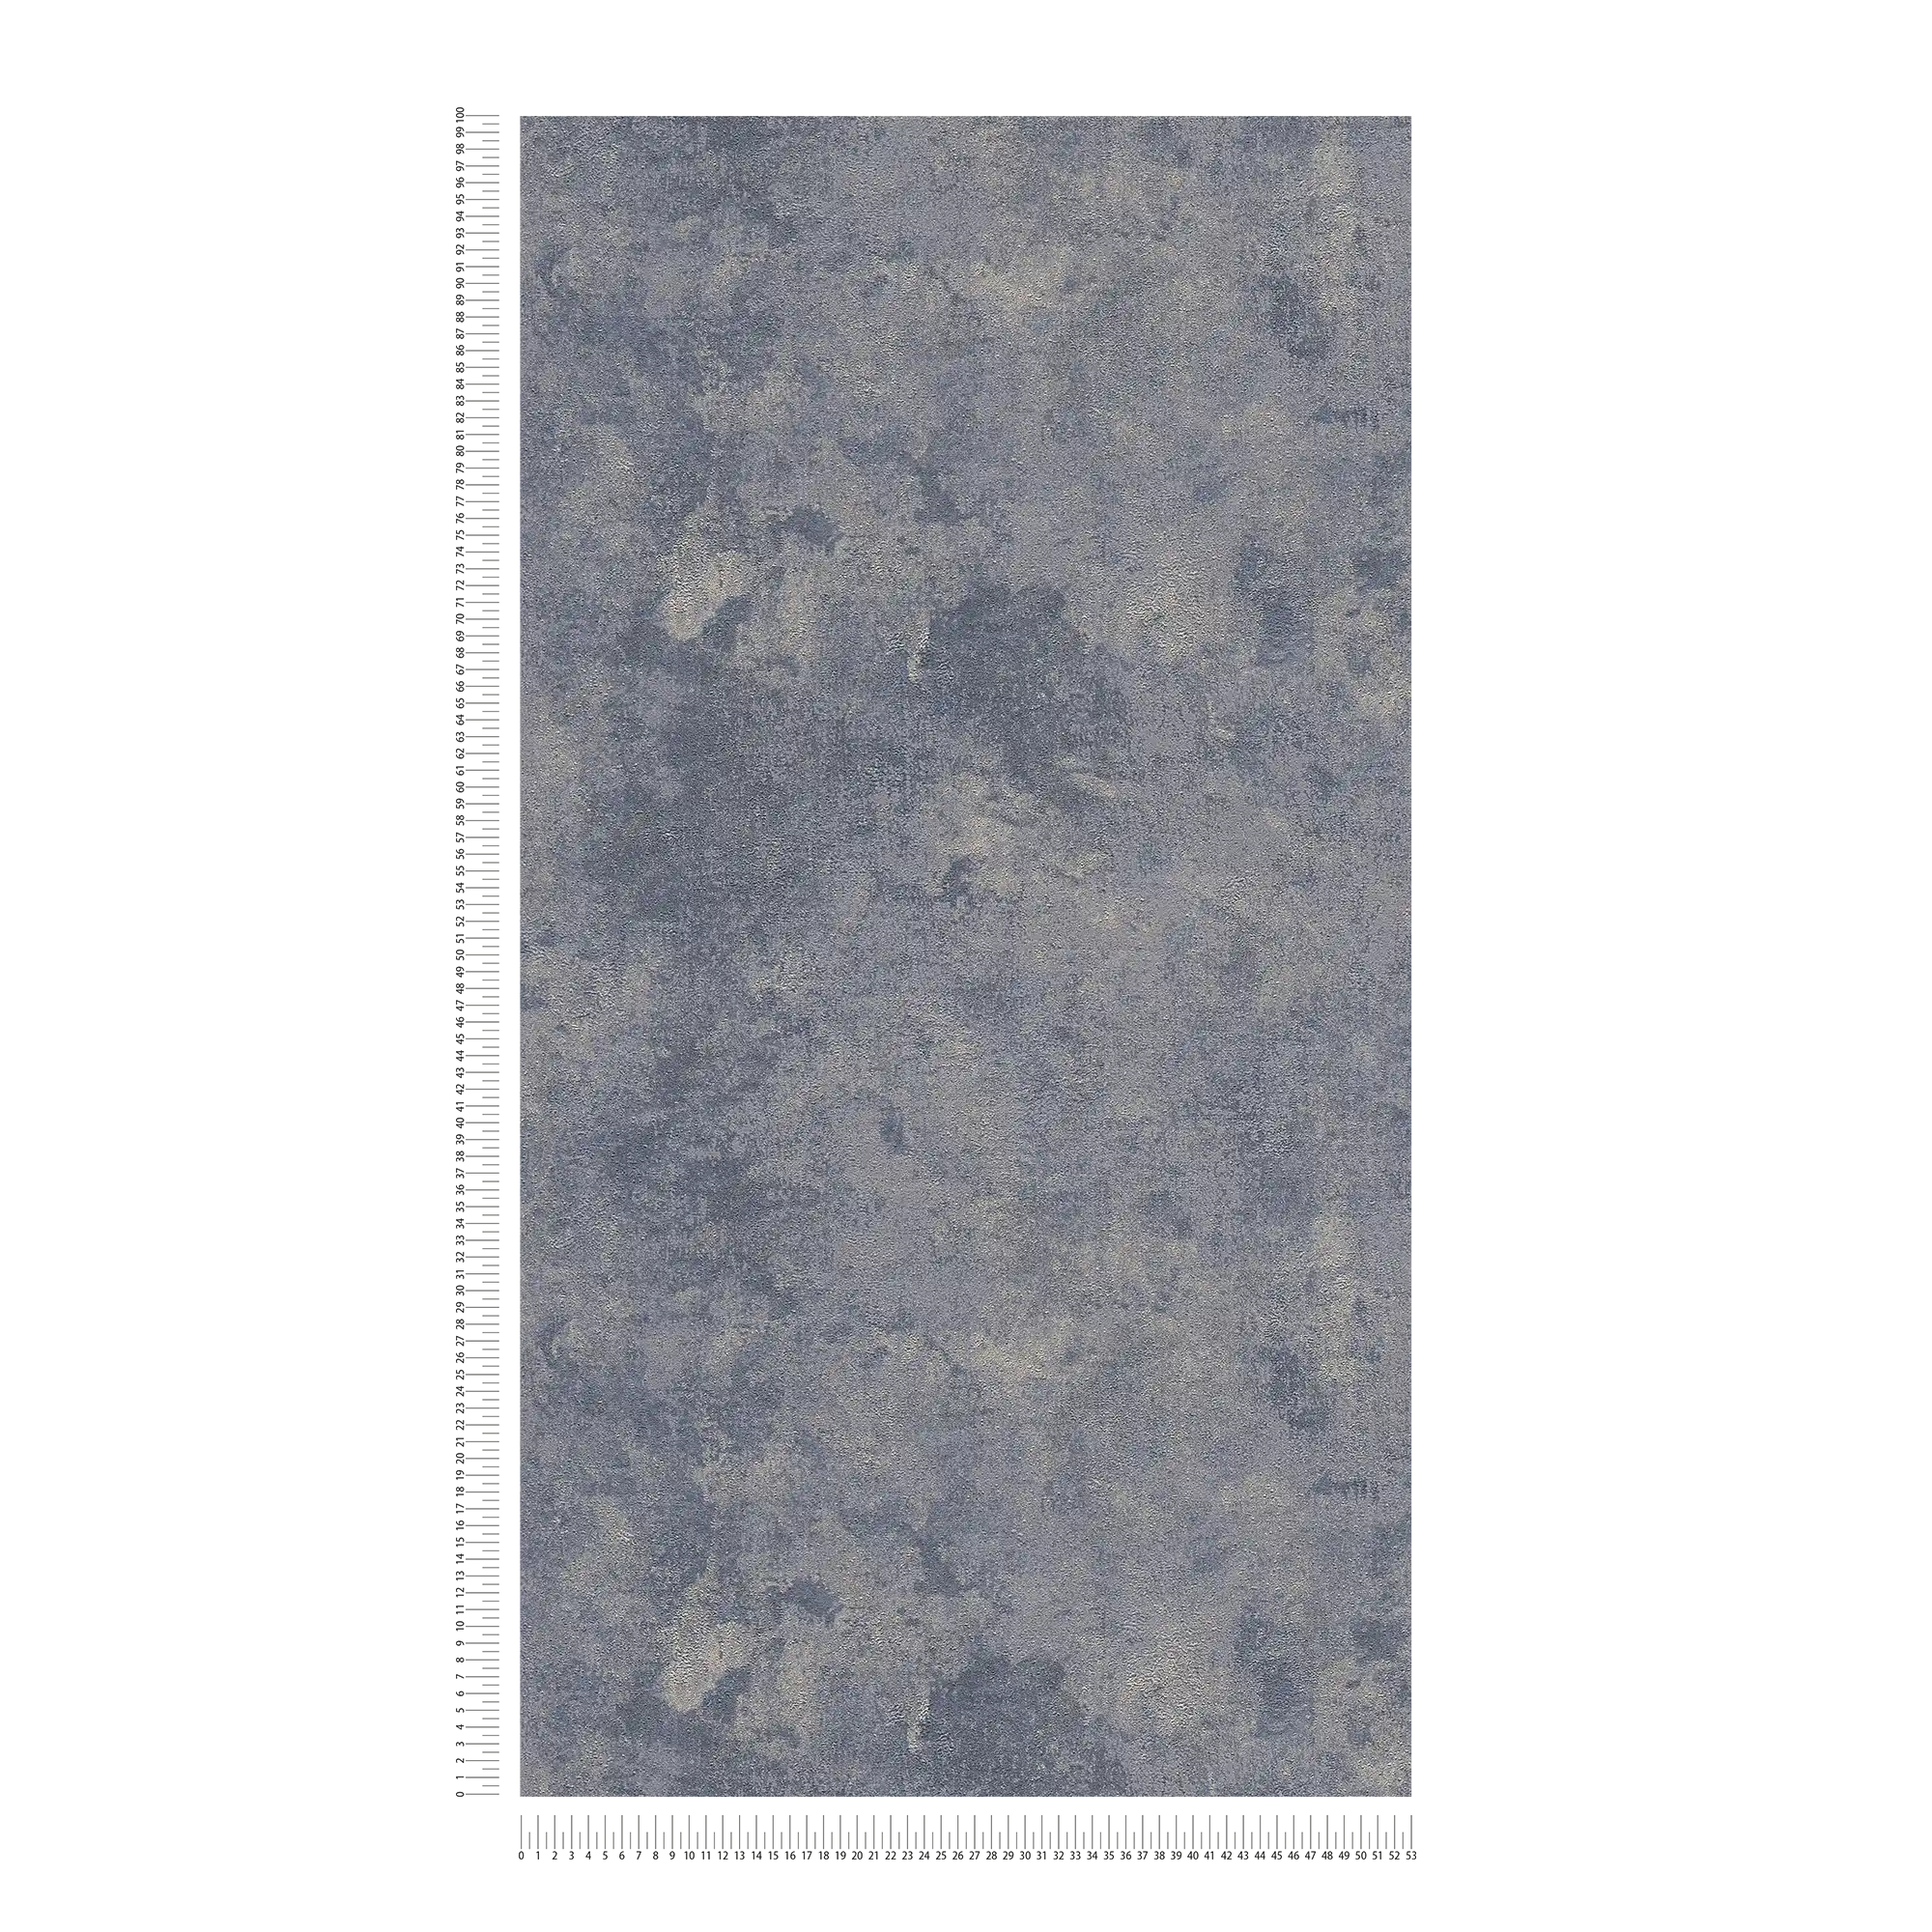             behang grove structuur & glanseffect - blauw, zilver, grijs
        